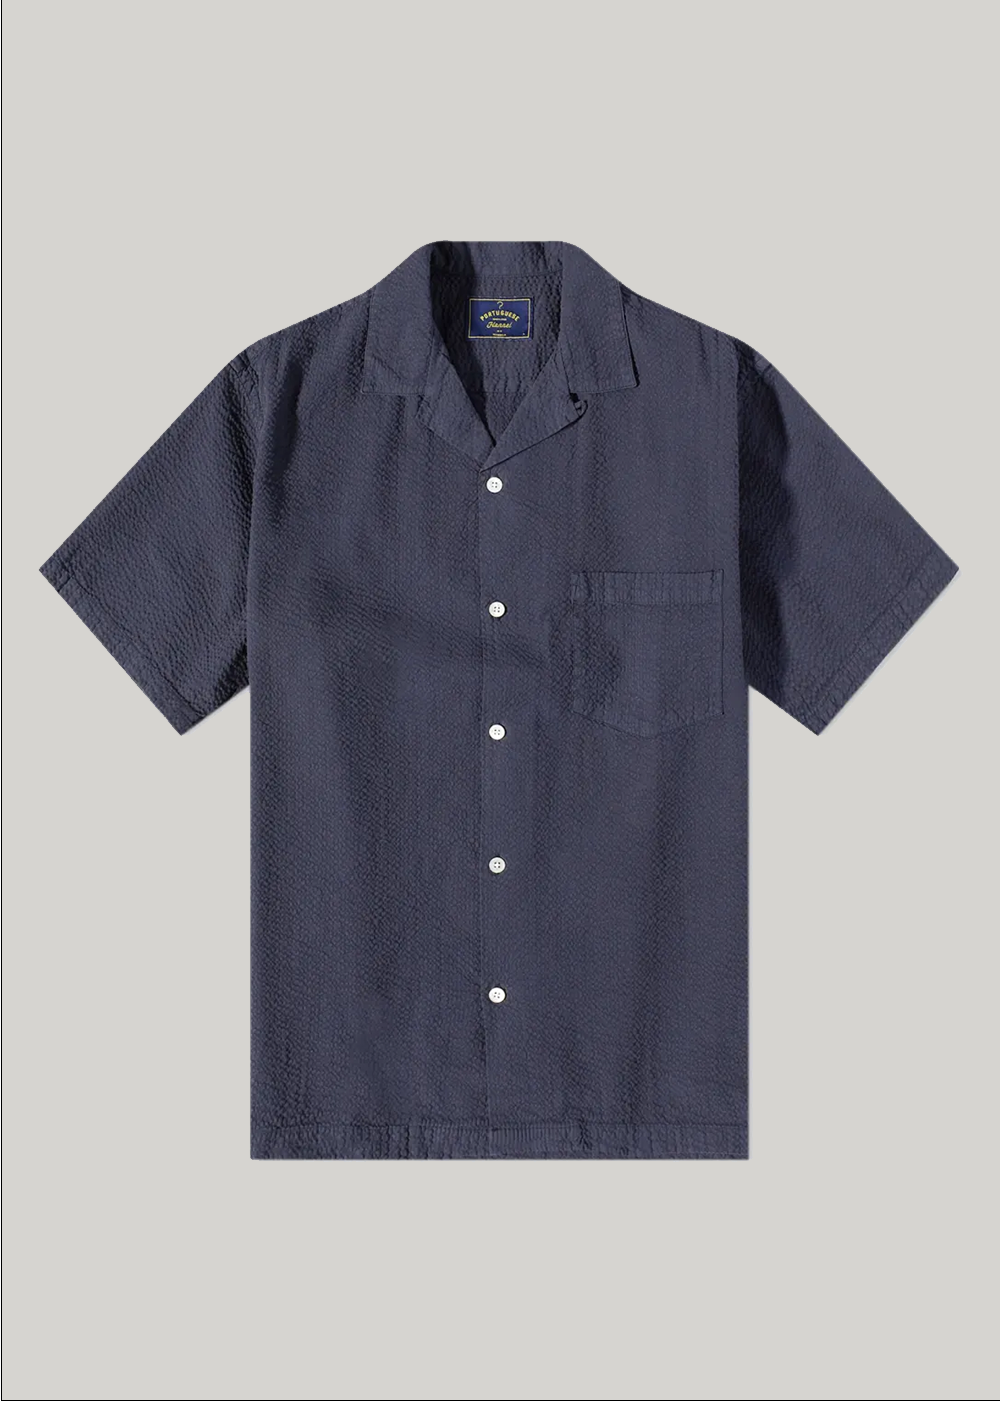 Atlantico Camp Collar Shirt - Portuguese Flannel - Danali